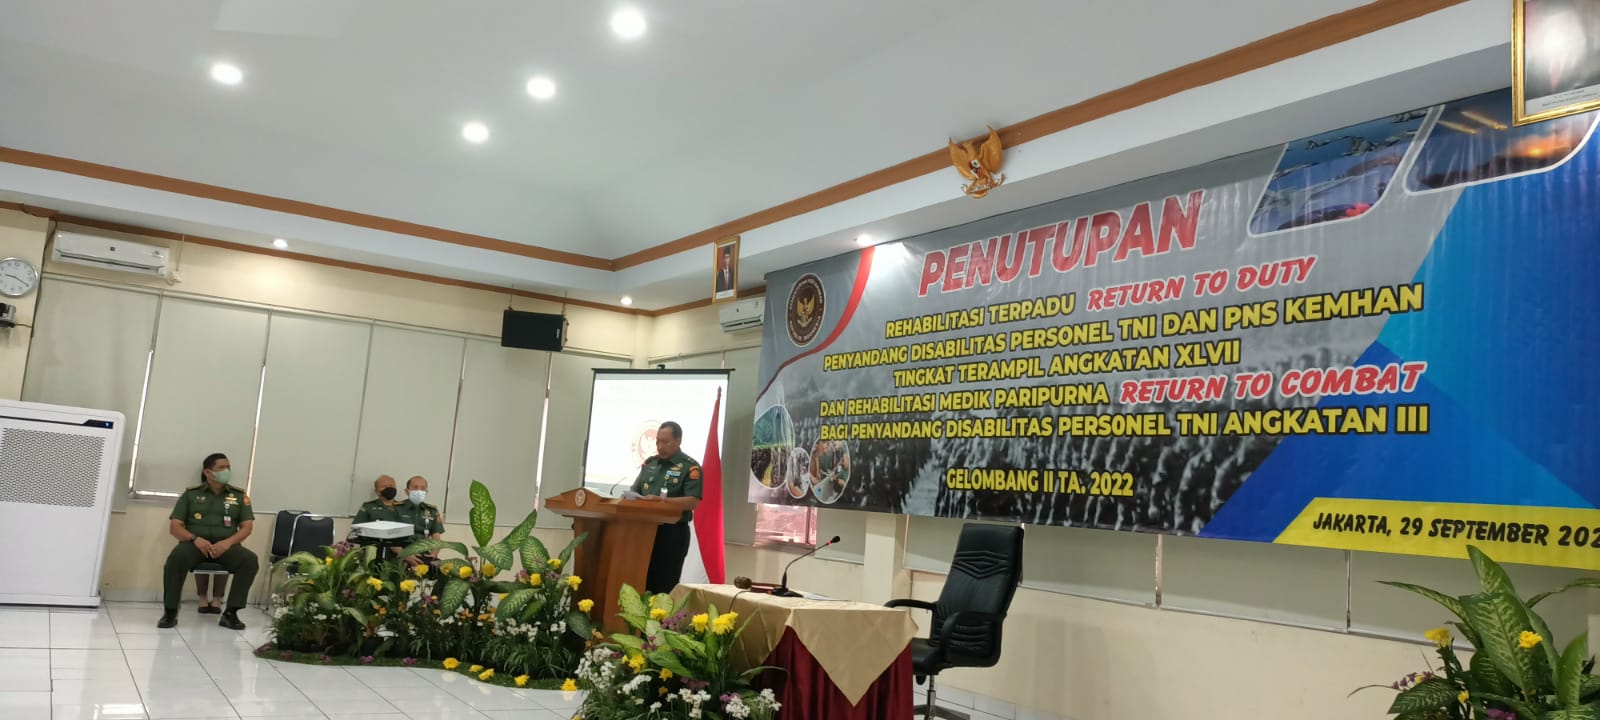 PENUTUPAN REHABILITASI PERSONEL TNI DAN PNS KEMHAN PENYANDANG DISABILITAS  GELOMBANG II TA 2022